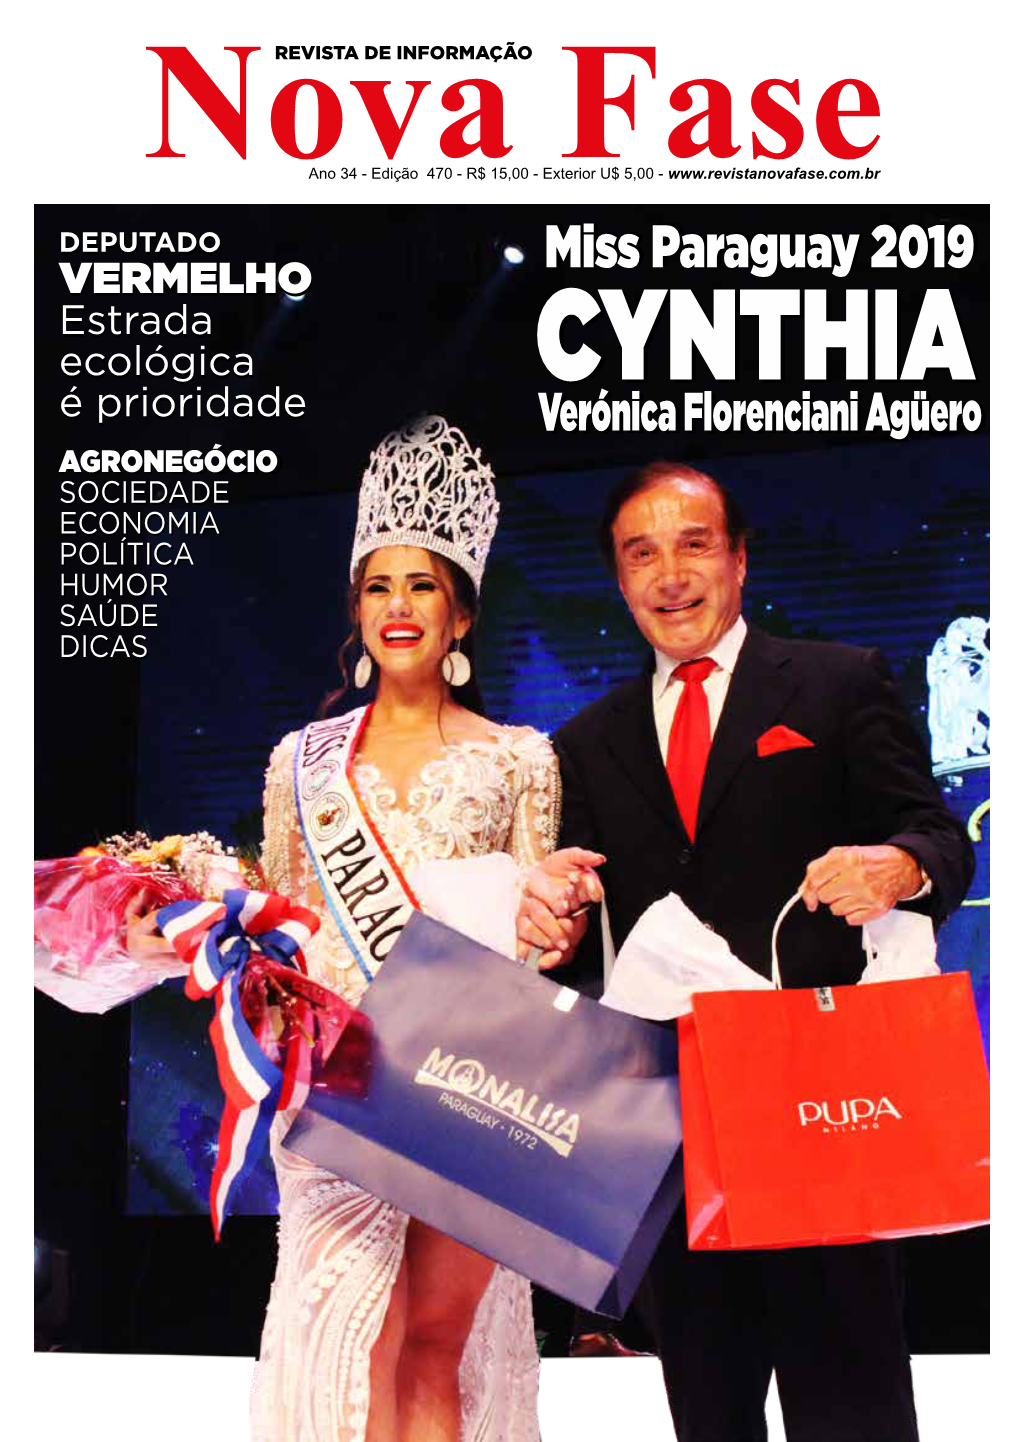 Miss Paraguay 2019